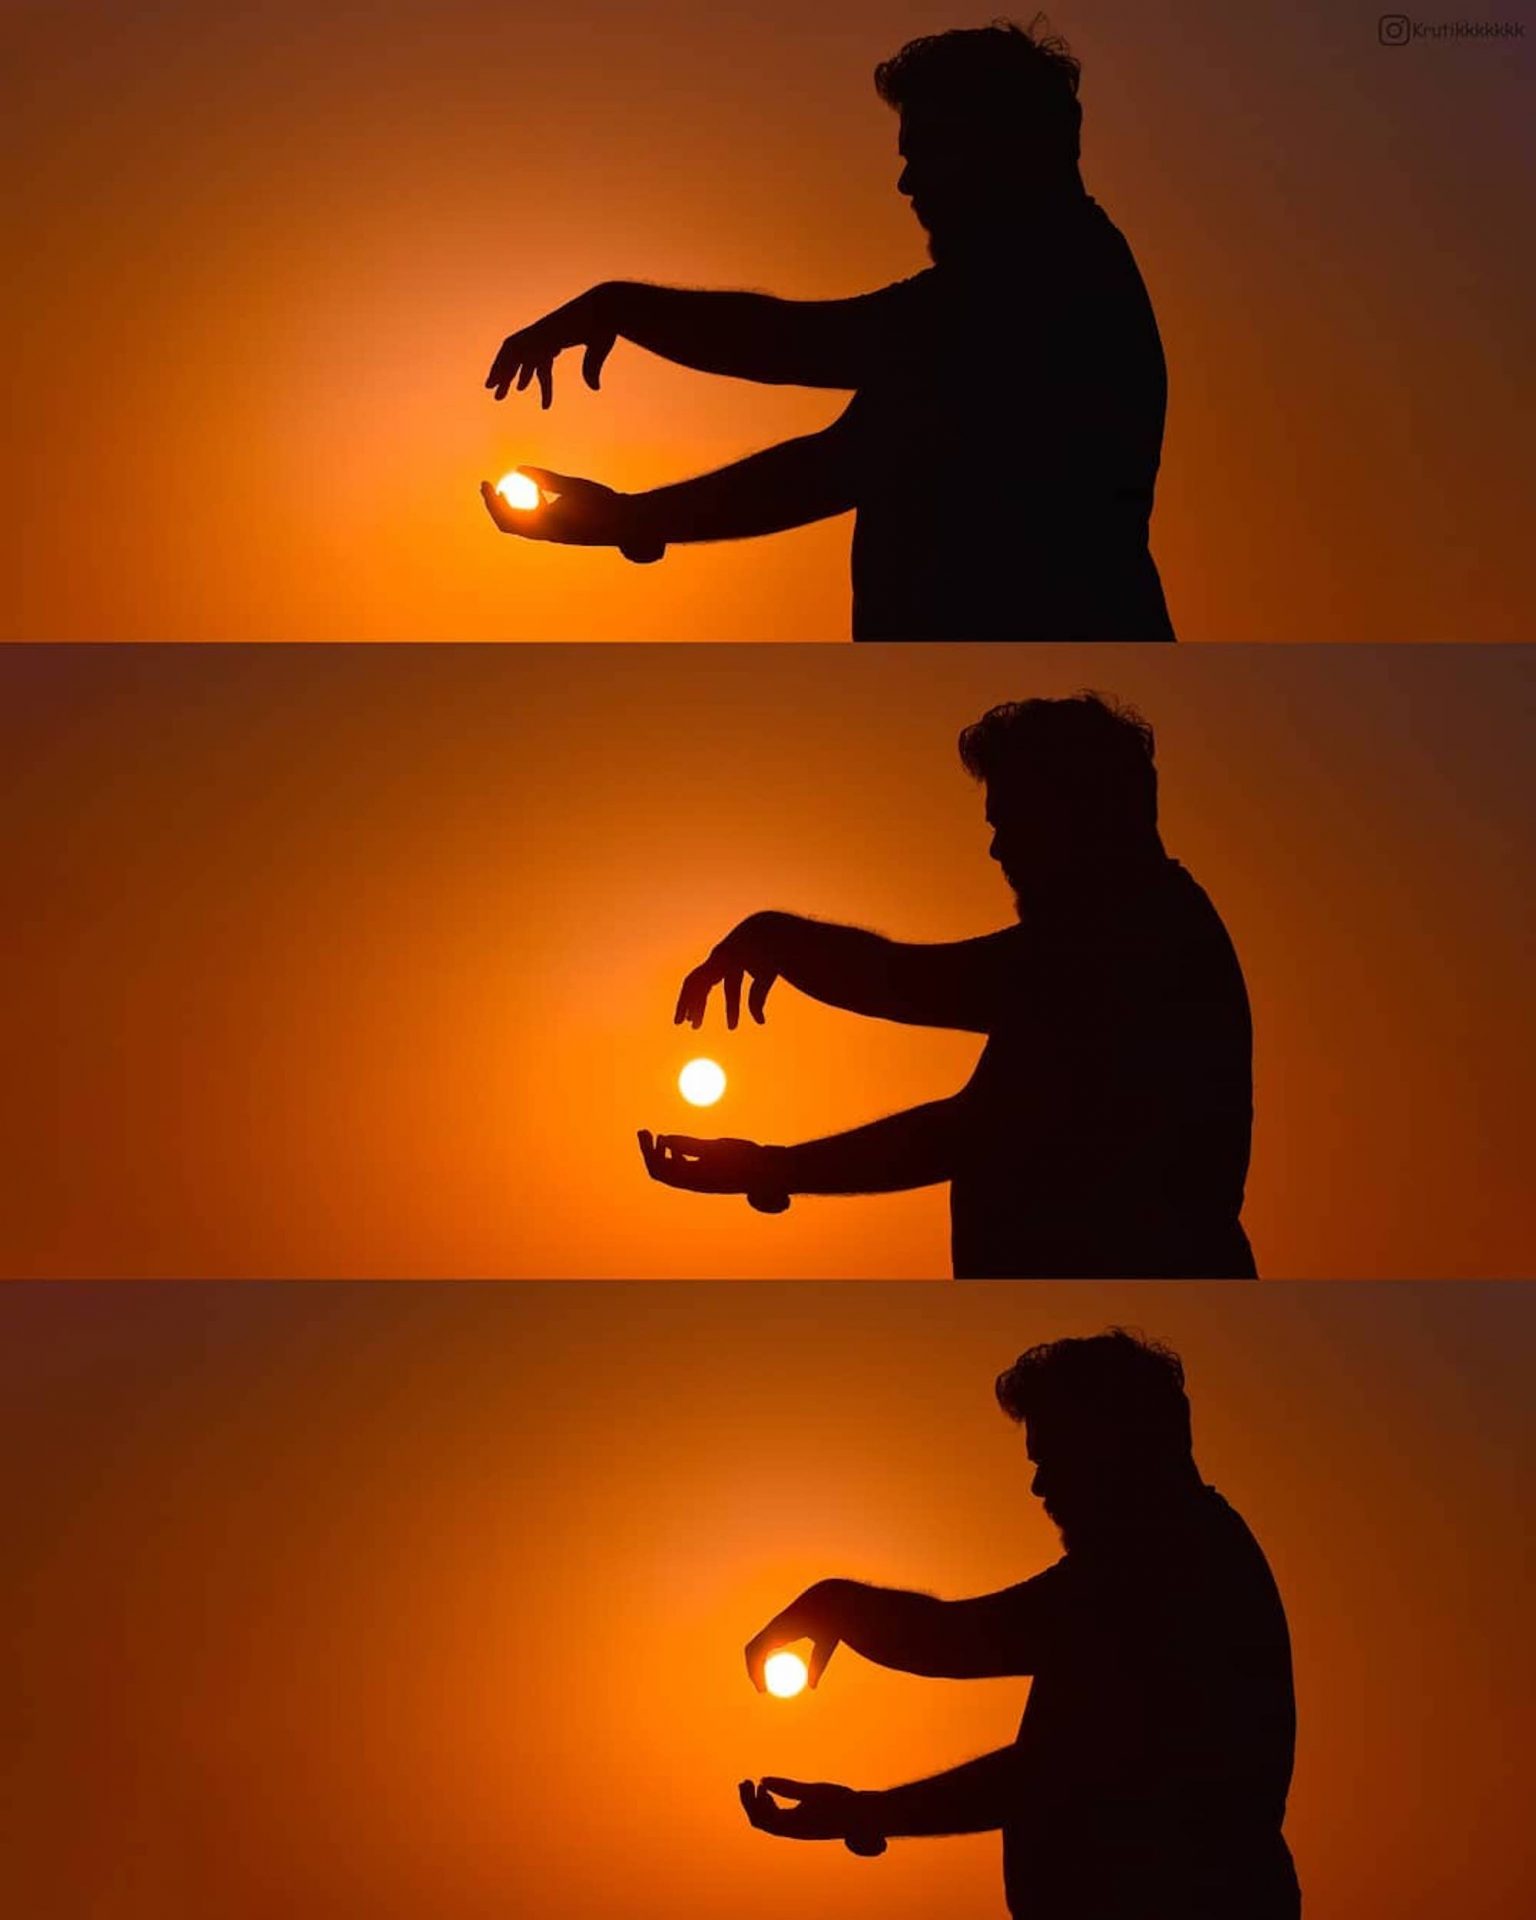 Le photographe Krutik Thakur joue avec le soleil pour créer des mises en scène originale